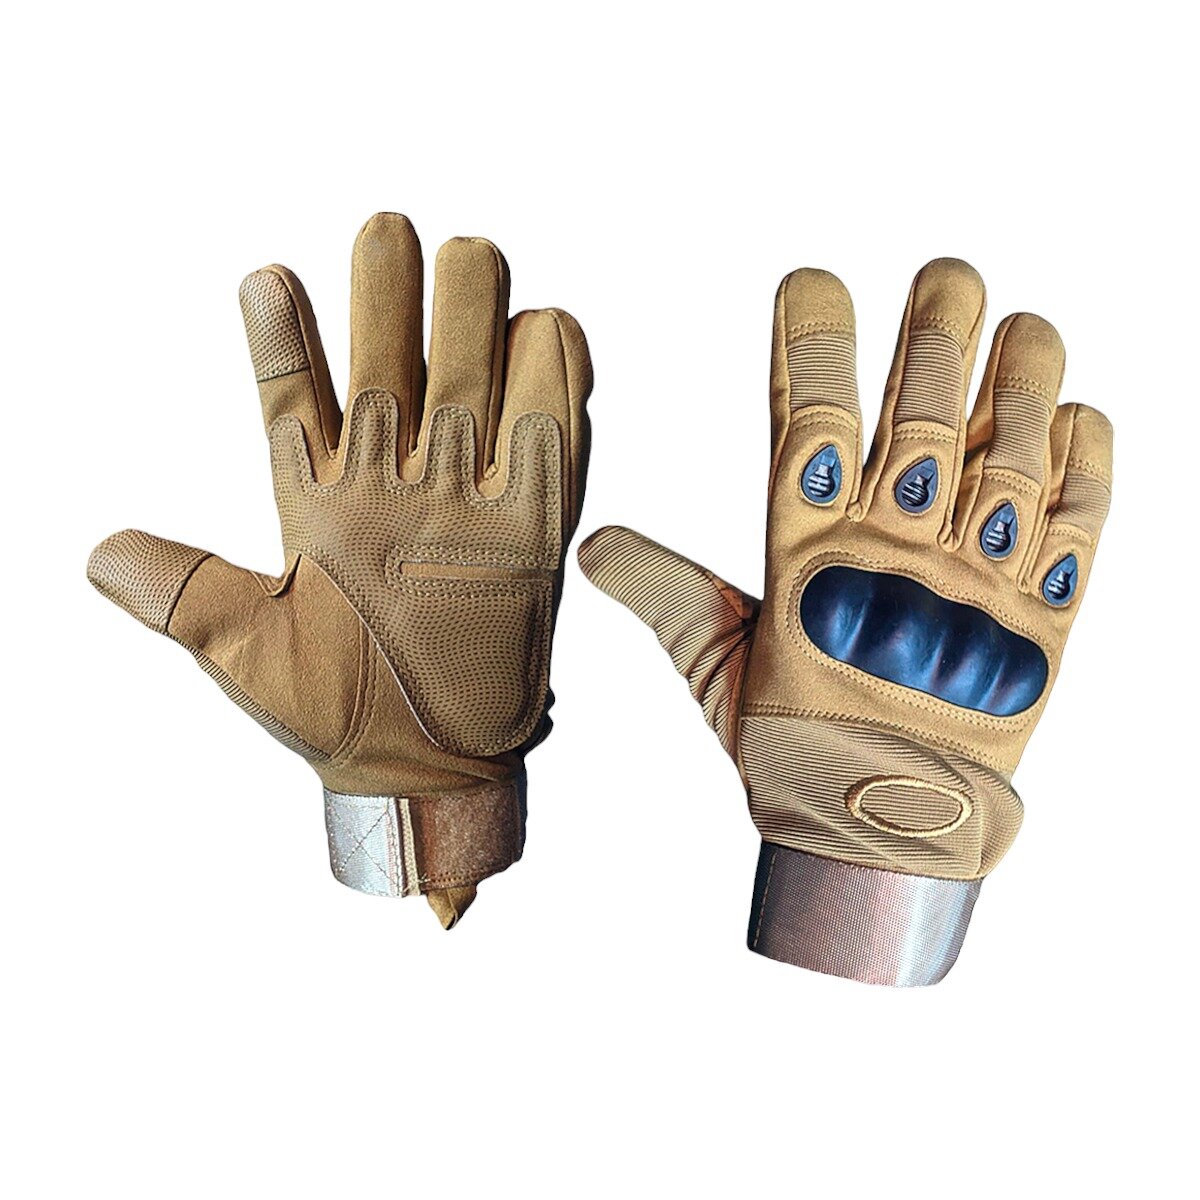 Мотоперчатки перчатки тактические утепленные для мотоциклиста на мотоцикл скутер мопед квадроцикл, песочные, XL